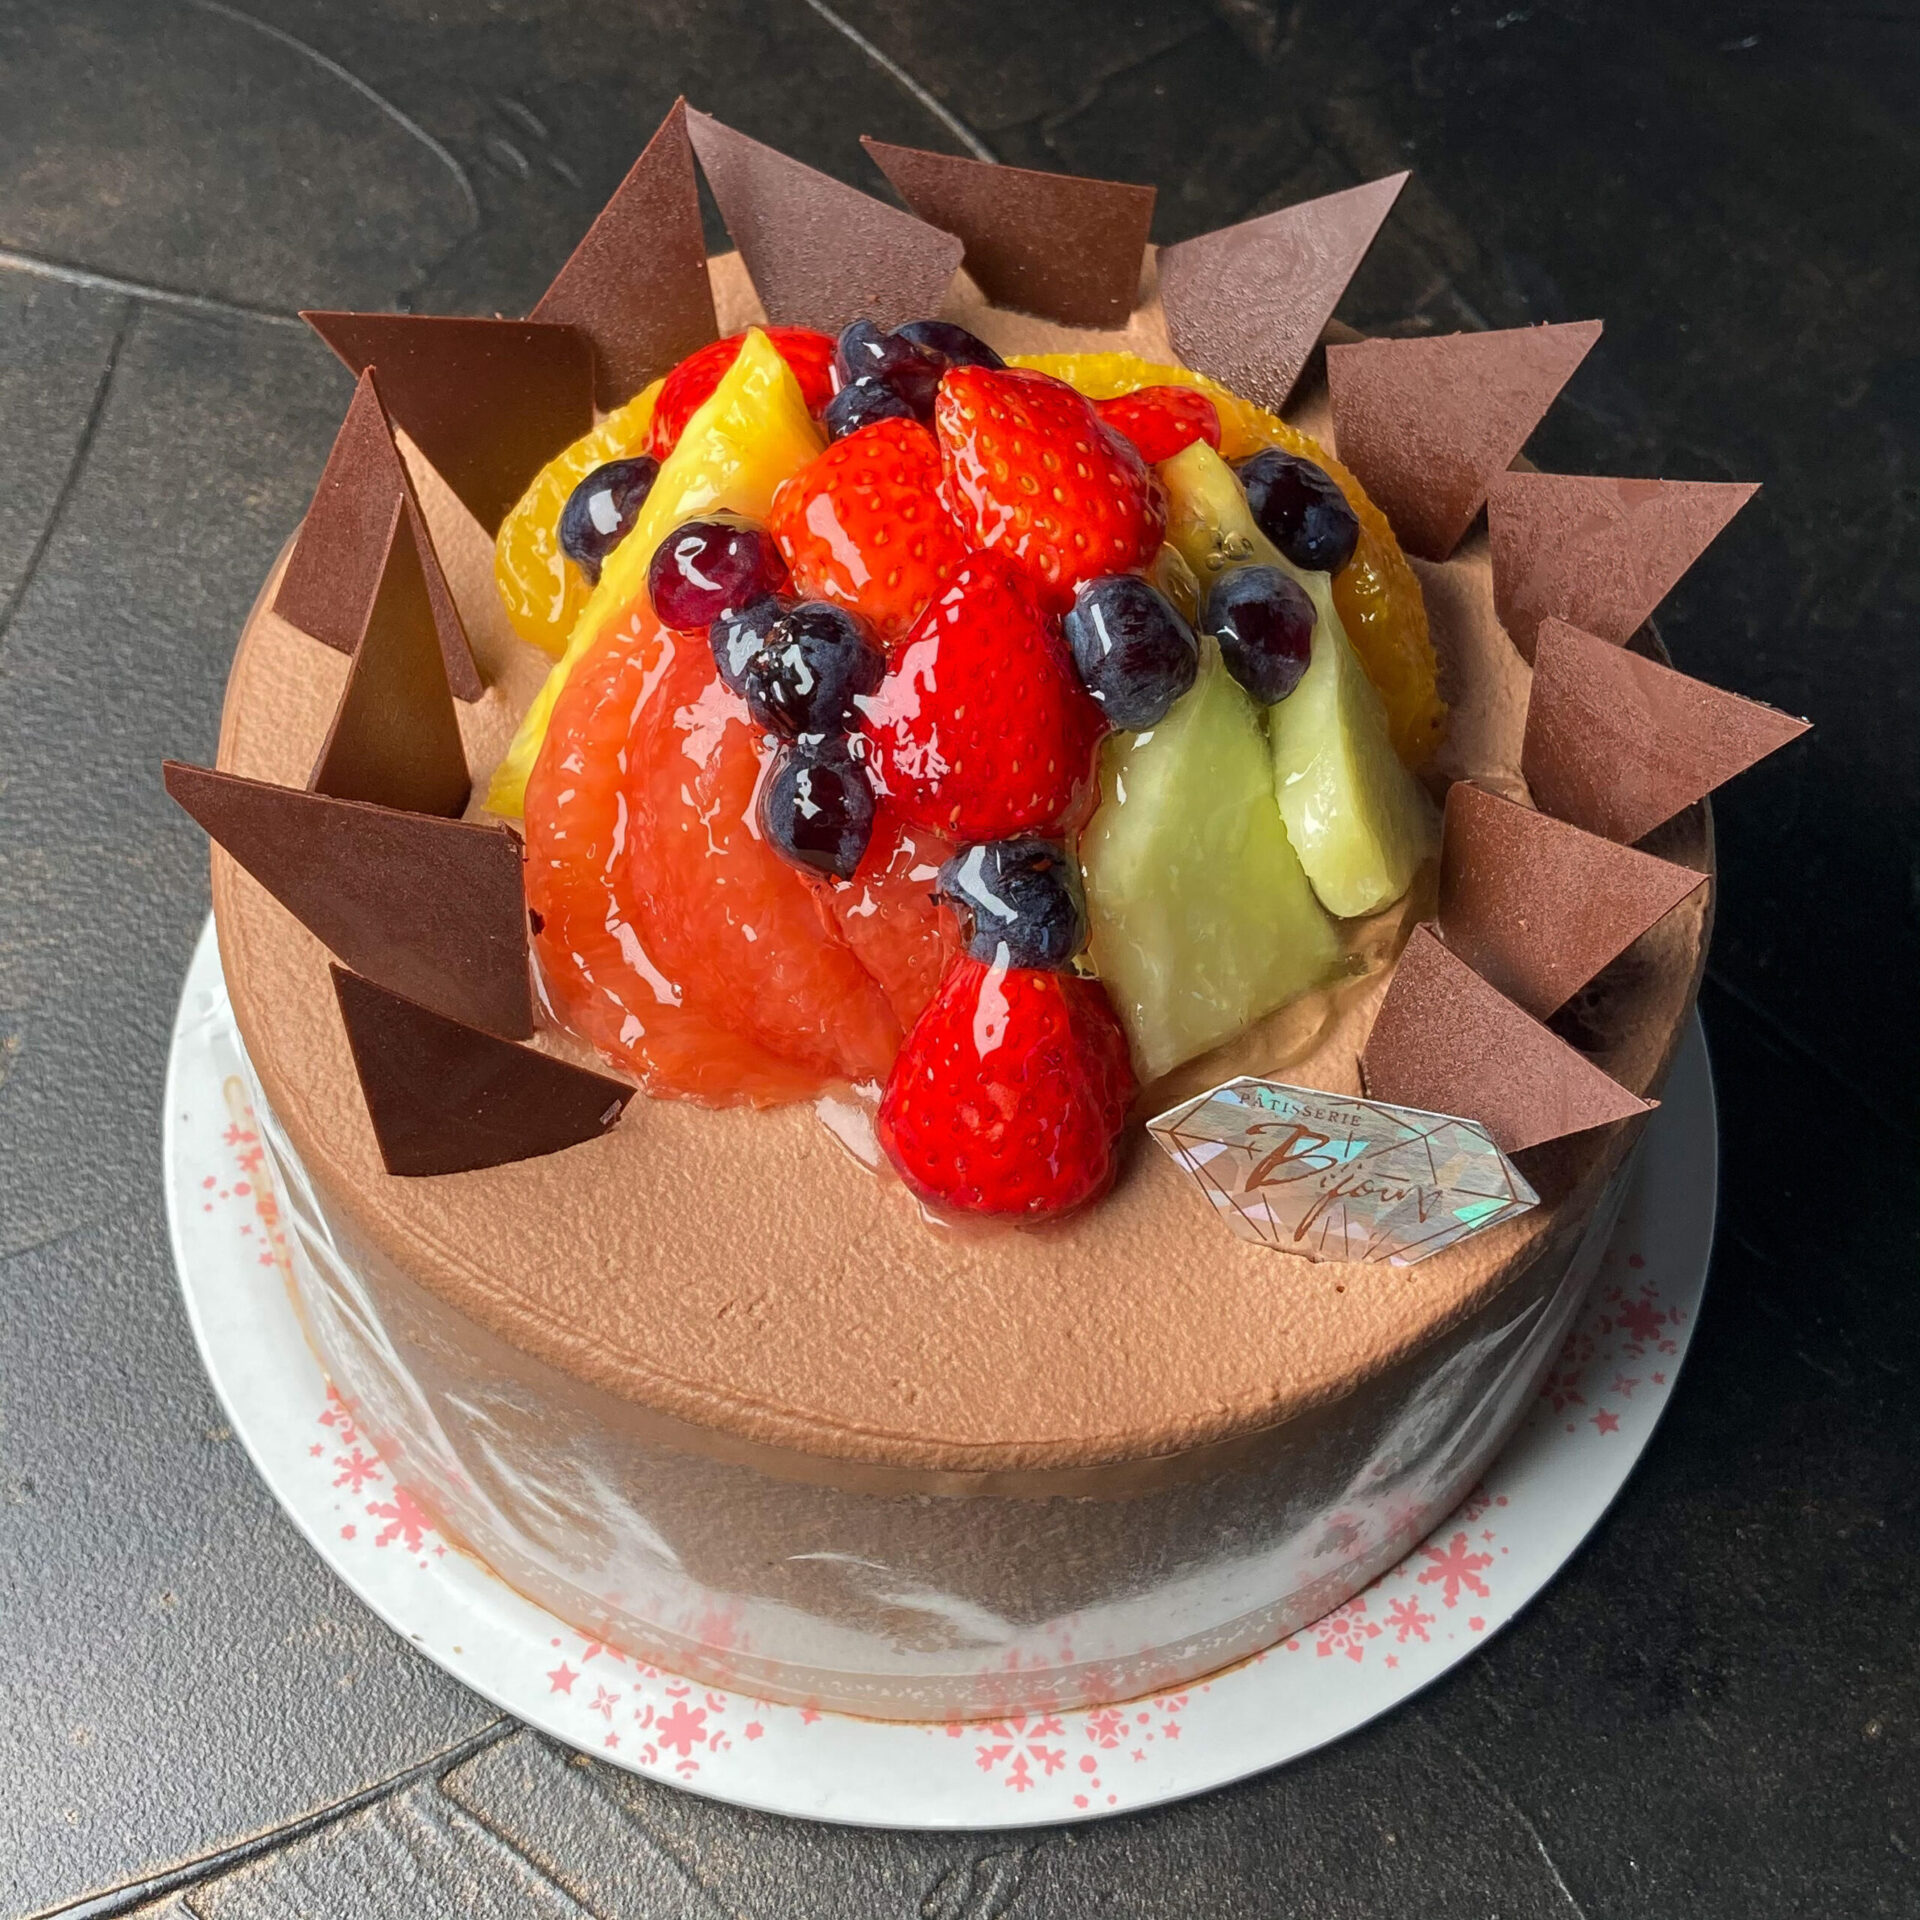 ホールケーキ ビジュー 熊本のケーキ専門店 パティスリービジュー 熊本パティスリービジュー